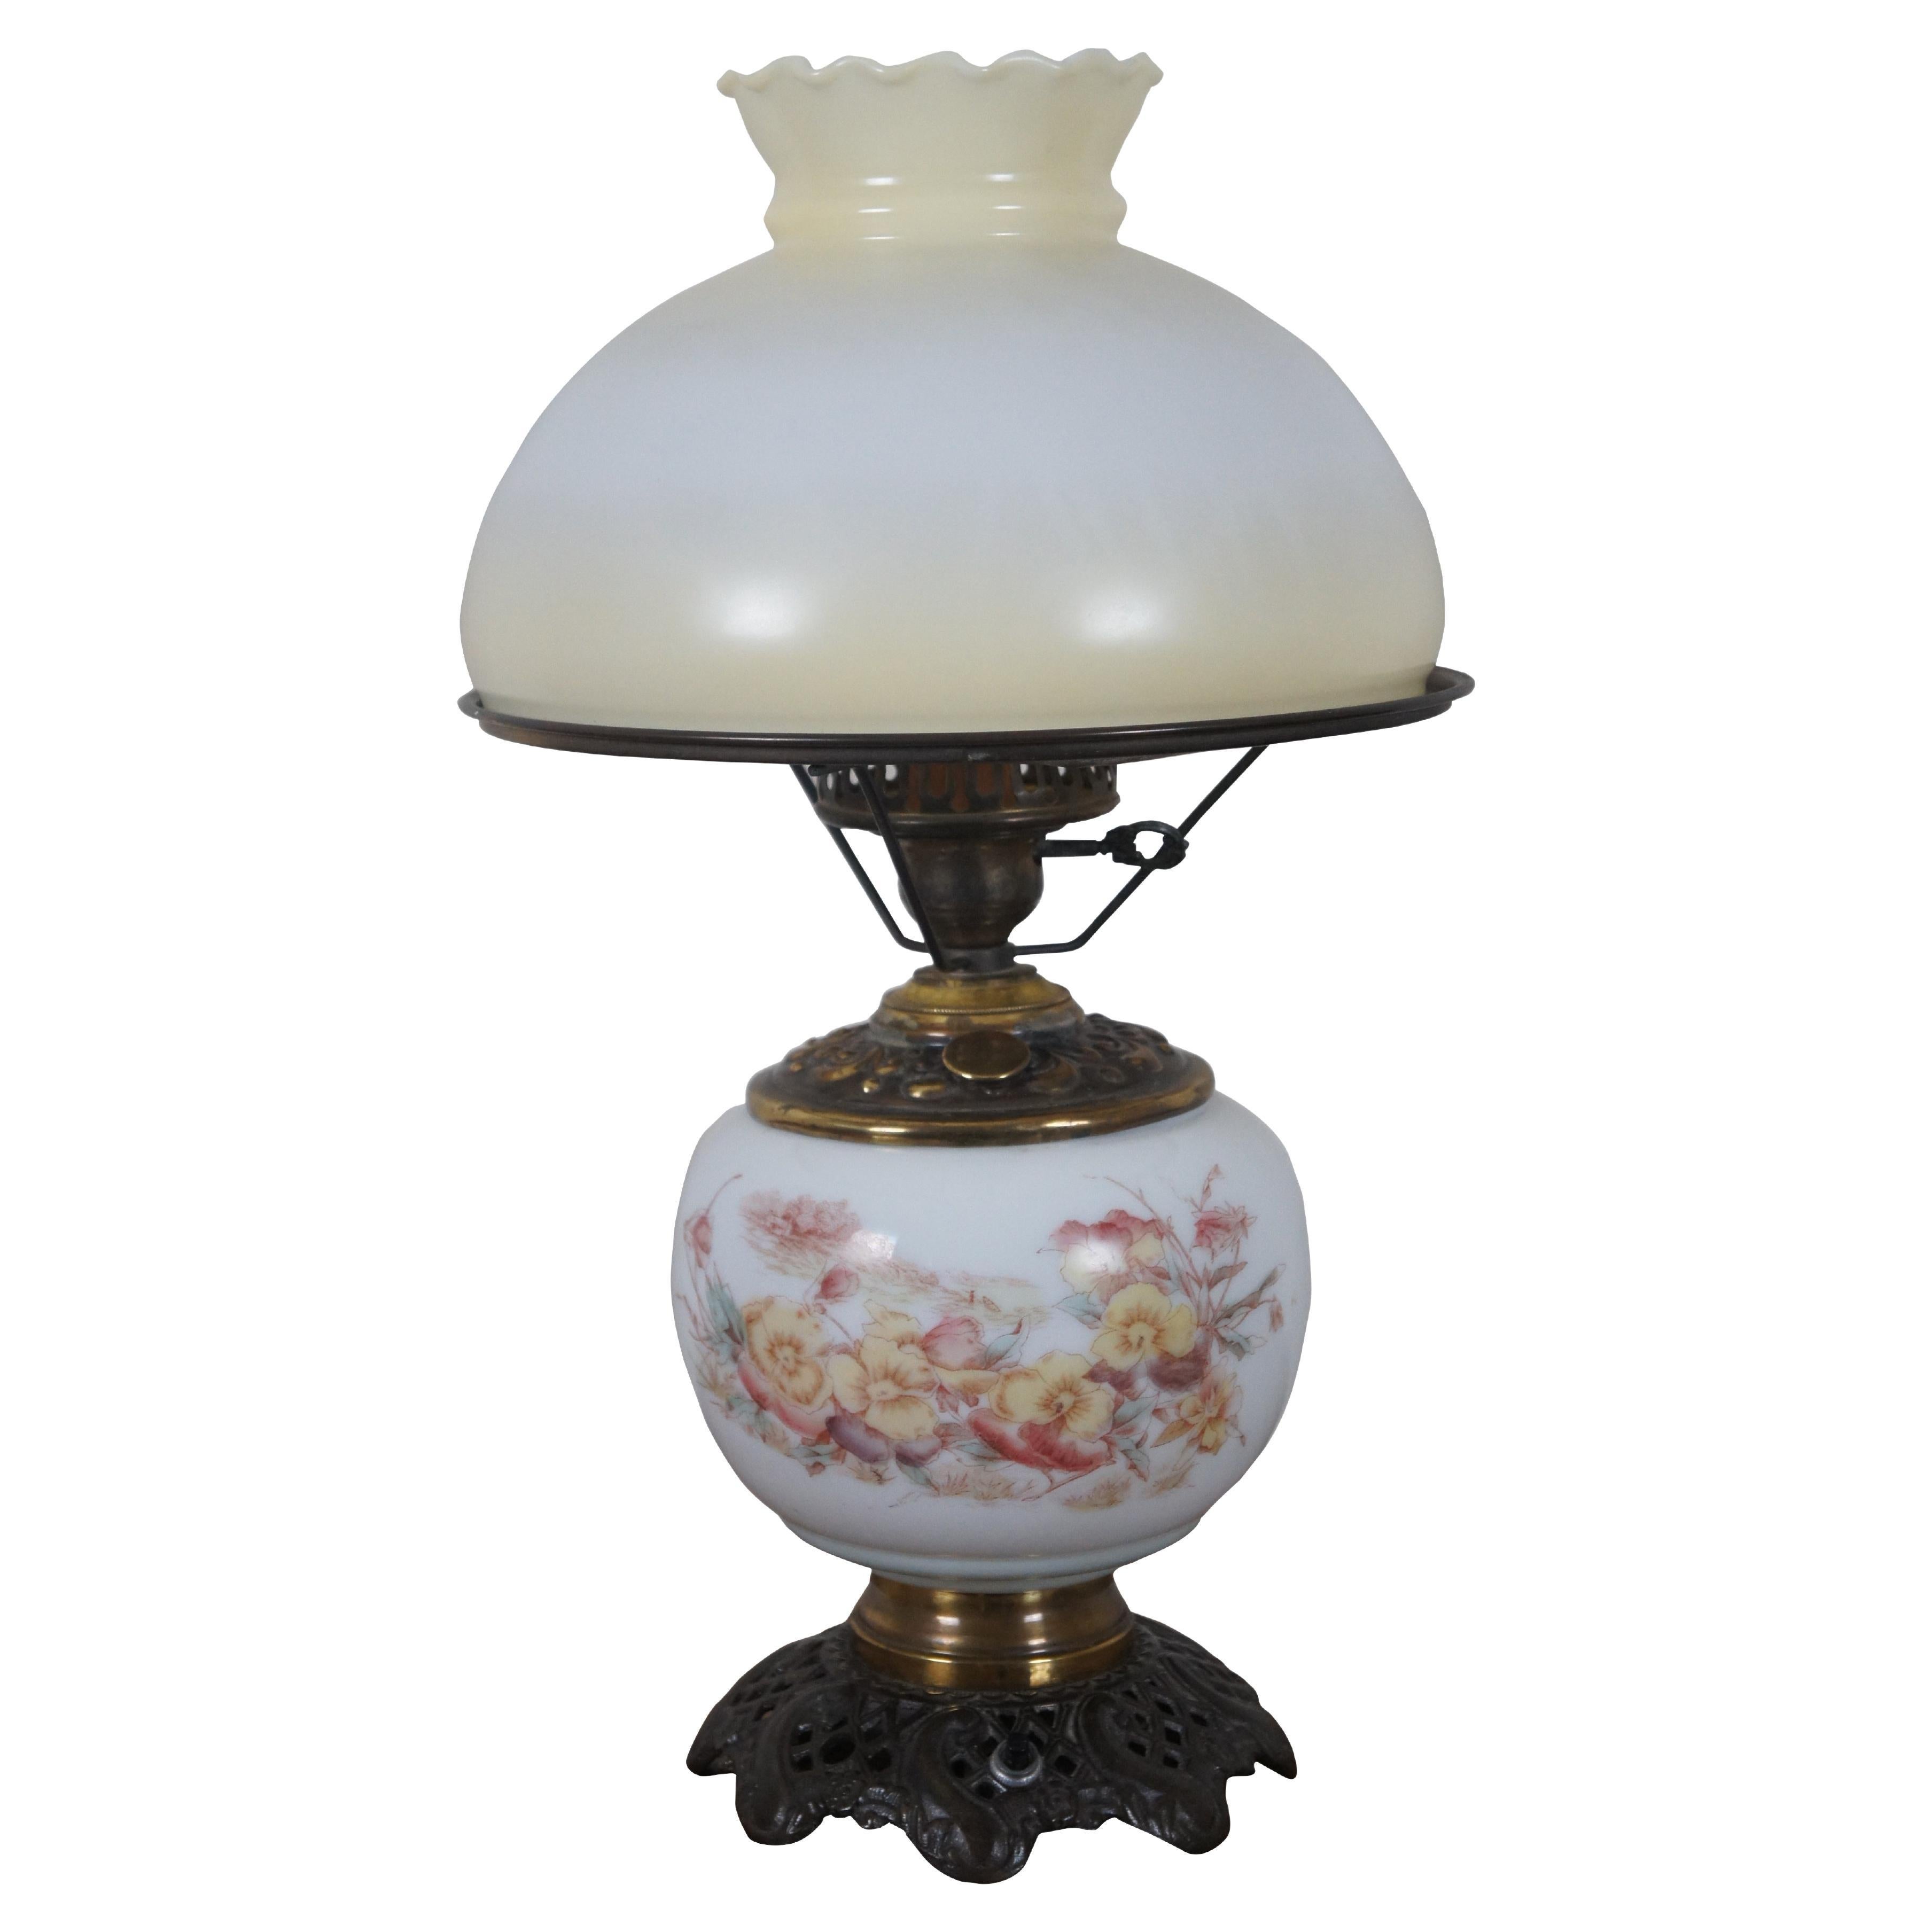 Antique Victorien Parlor Gone with the Wind Converted Oil Lamp Floral 18" (lampe à huile convertie en salon)